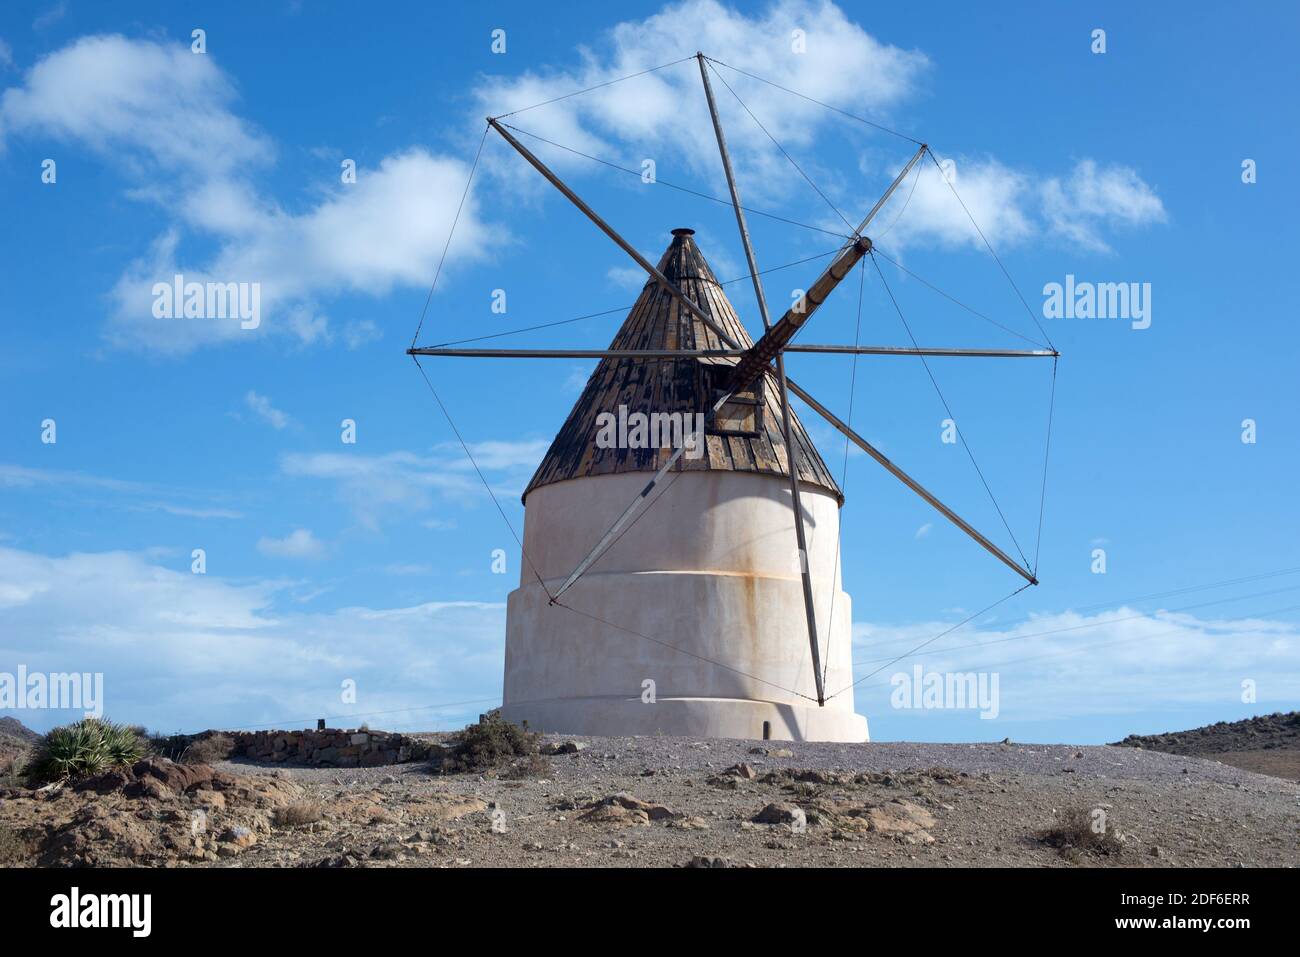 Traditional windmill in Cerro del Ave Maria, Cabo de gata-Nijar Natural Park, Almeria province, Andalucia, Spain. Stock Photo